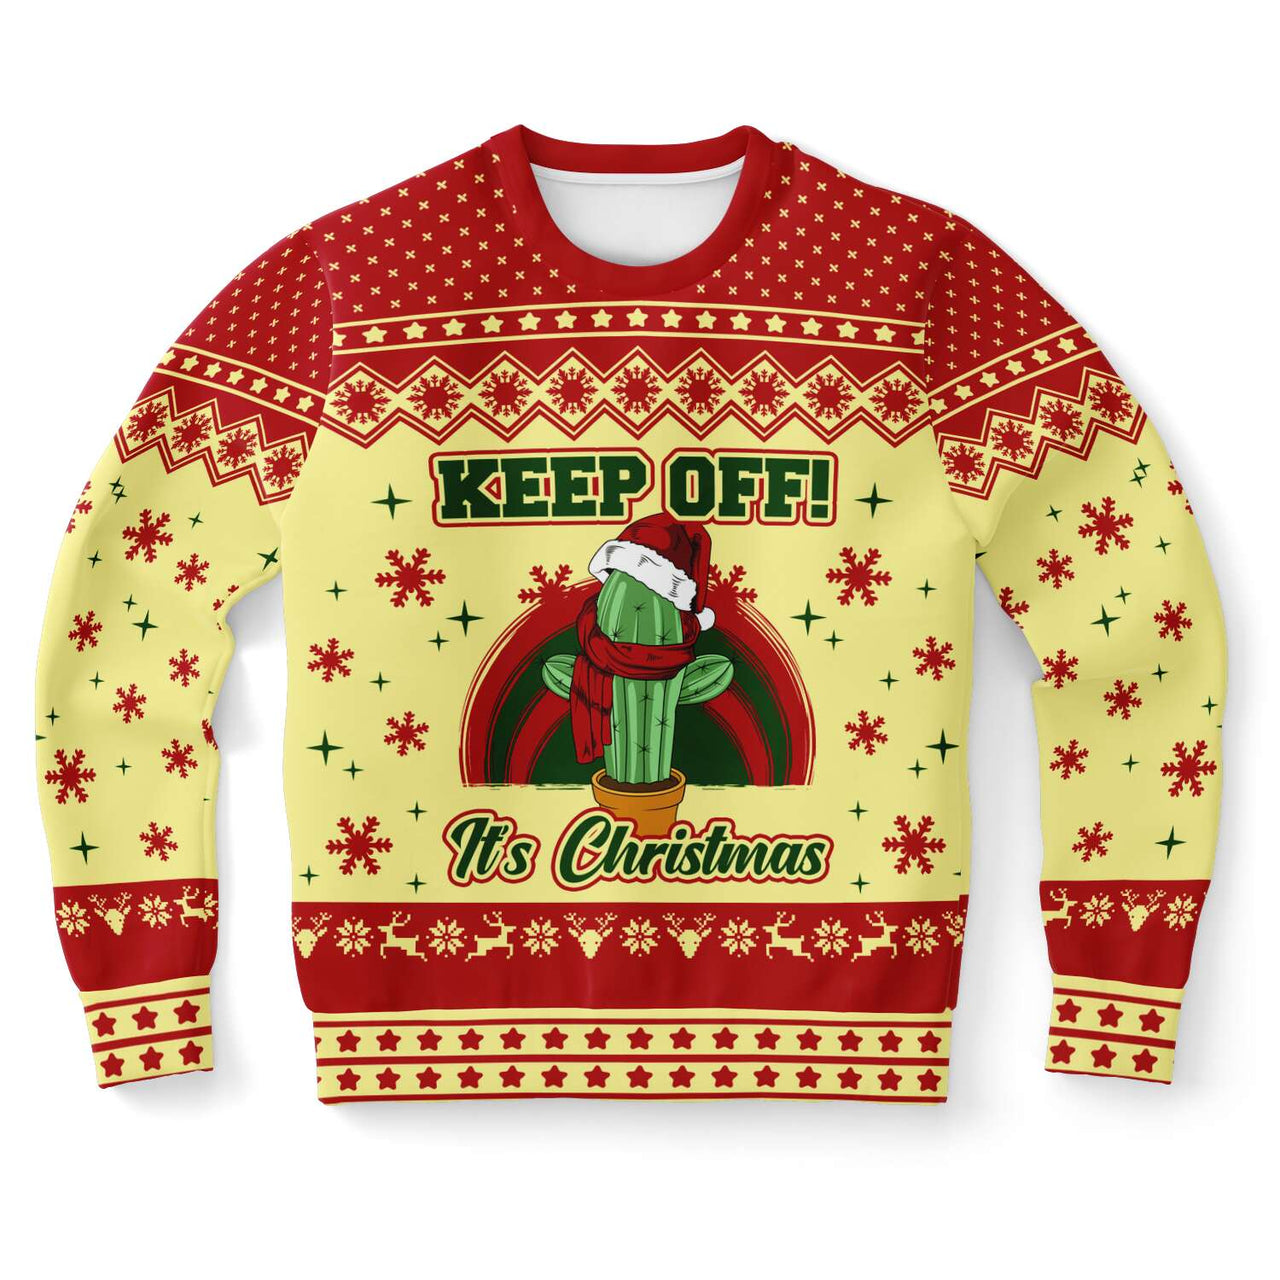 Keep Off - Ugly Christmas Shirt